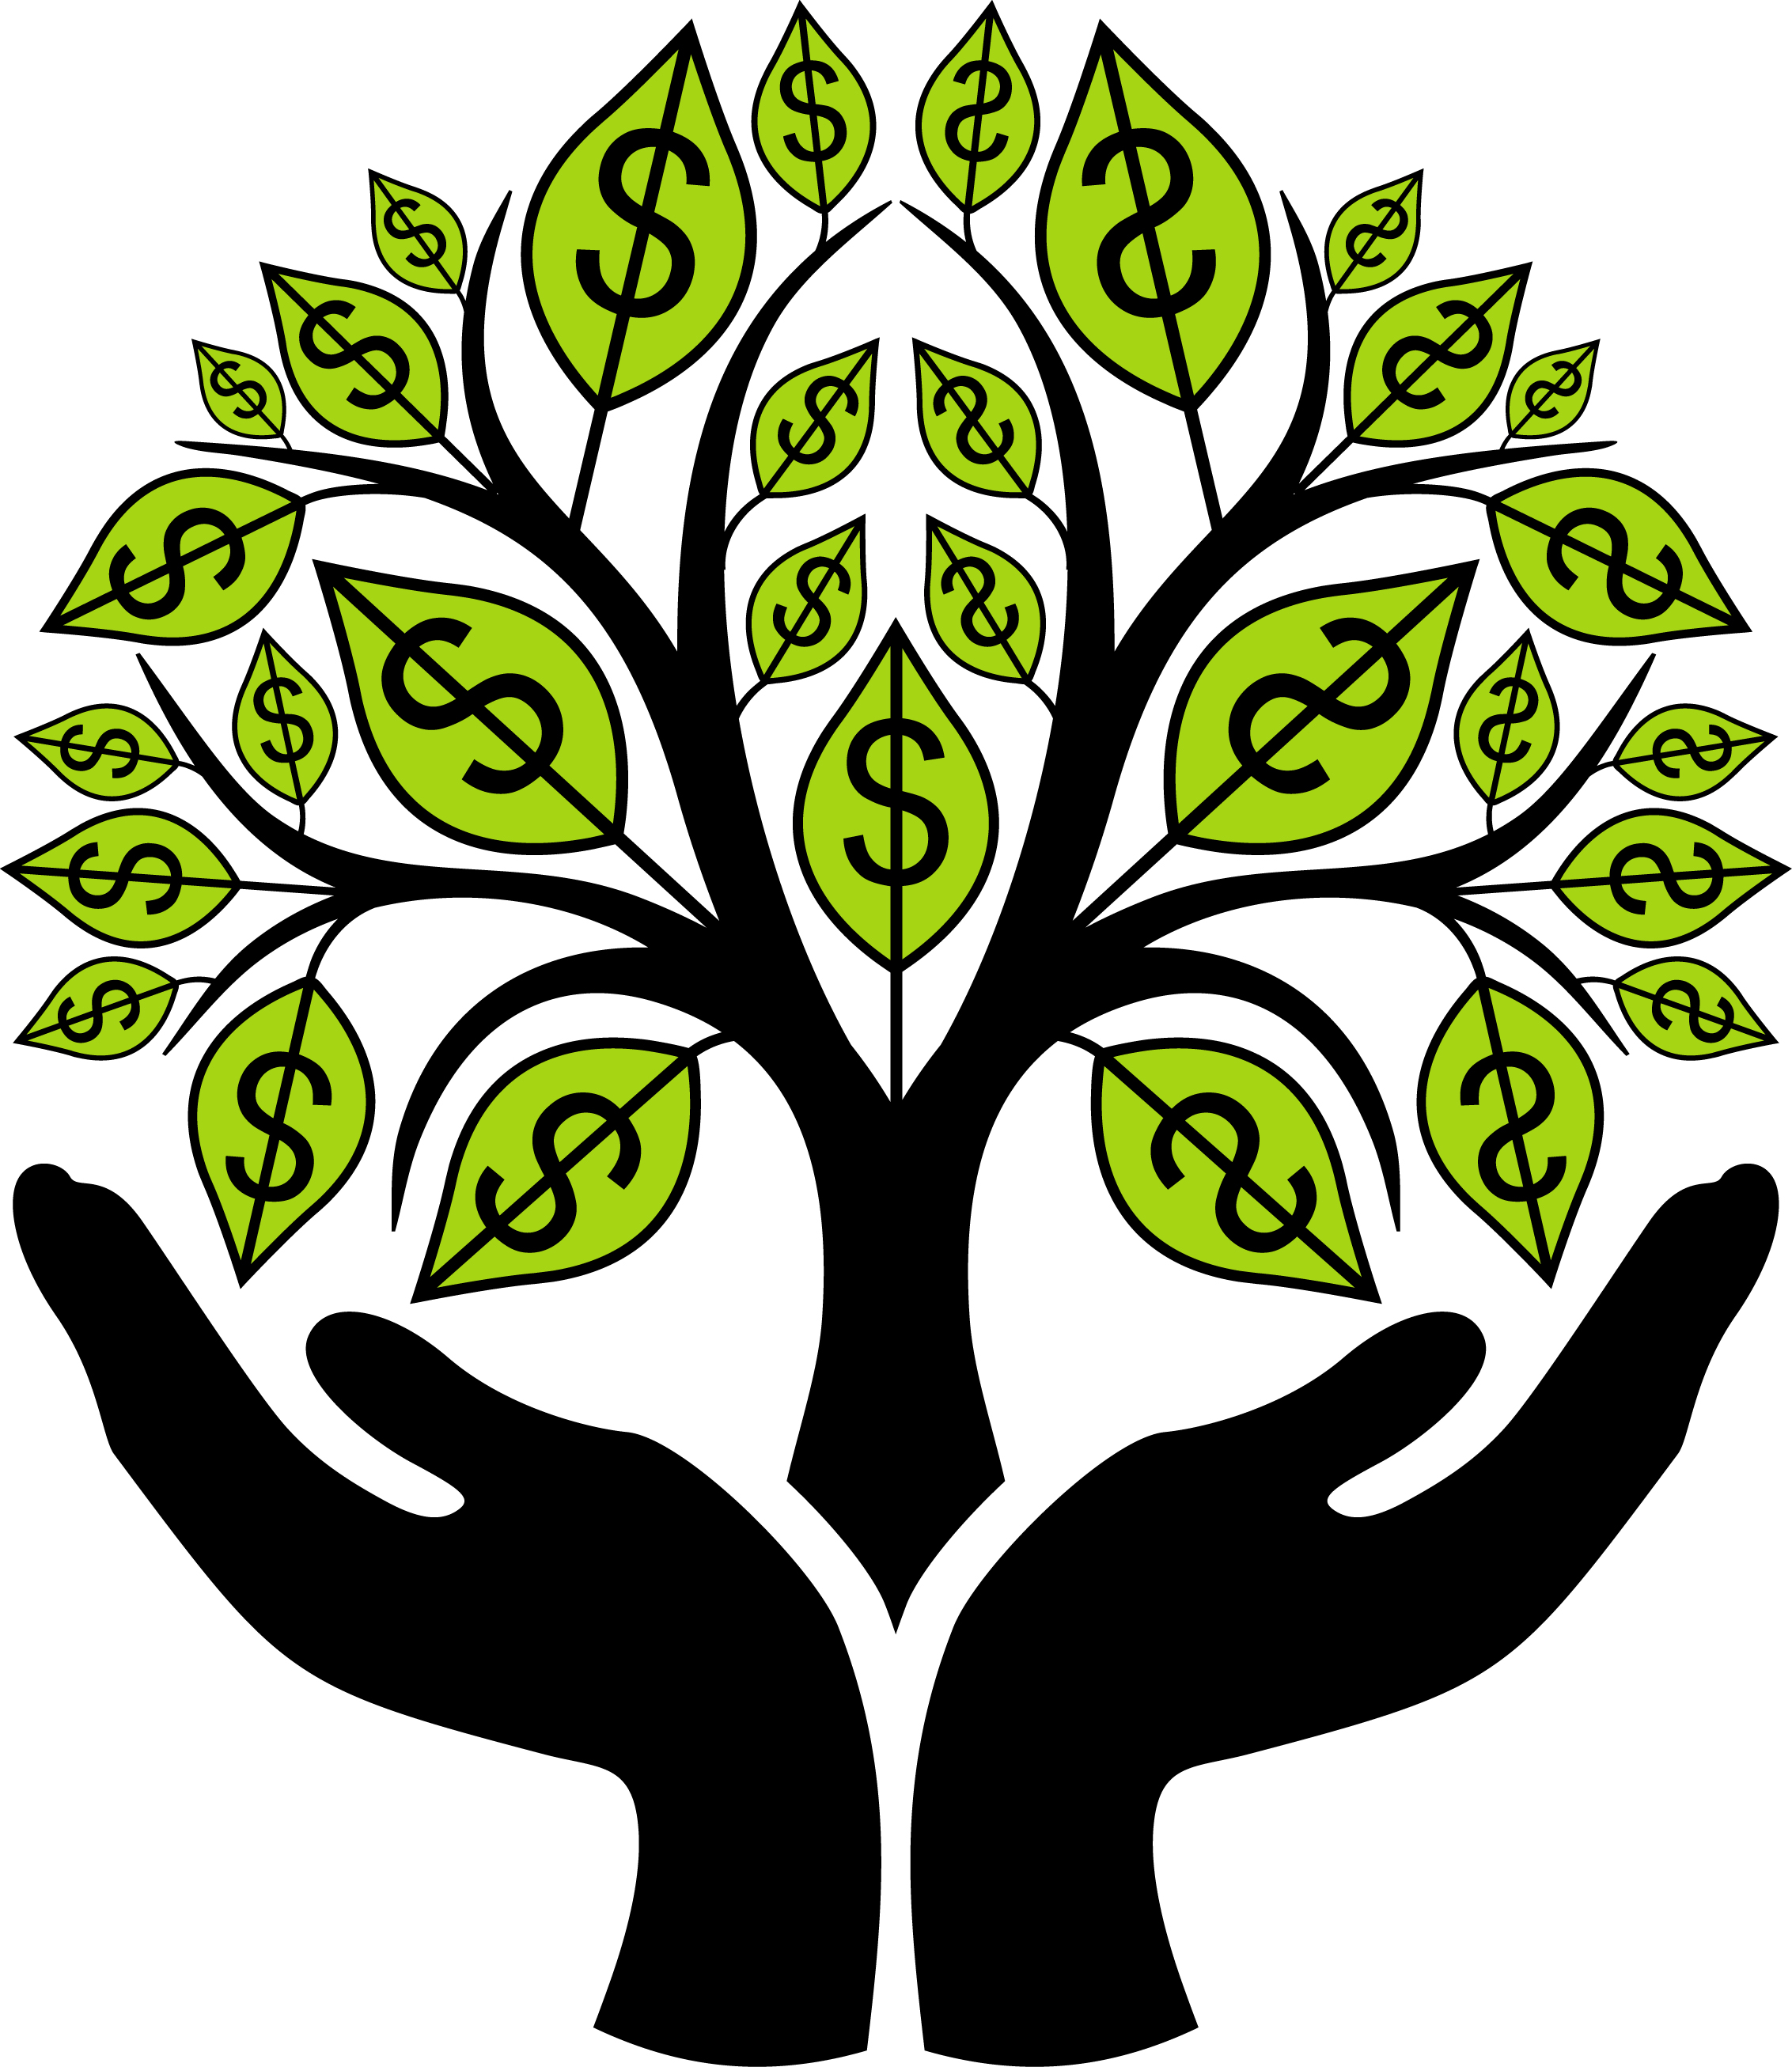 ... Money Tree - A conceptual